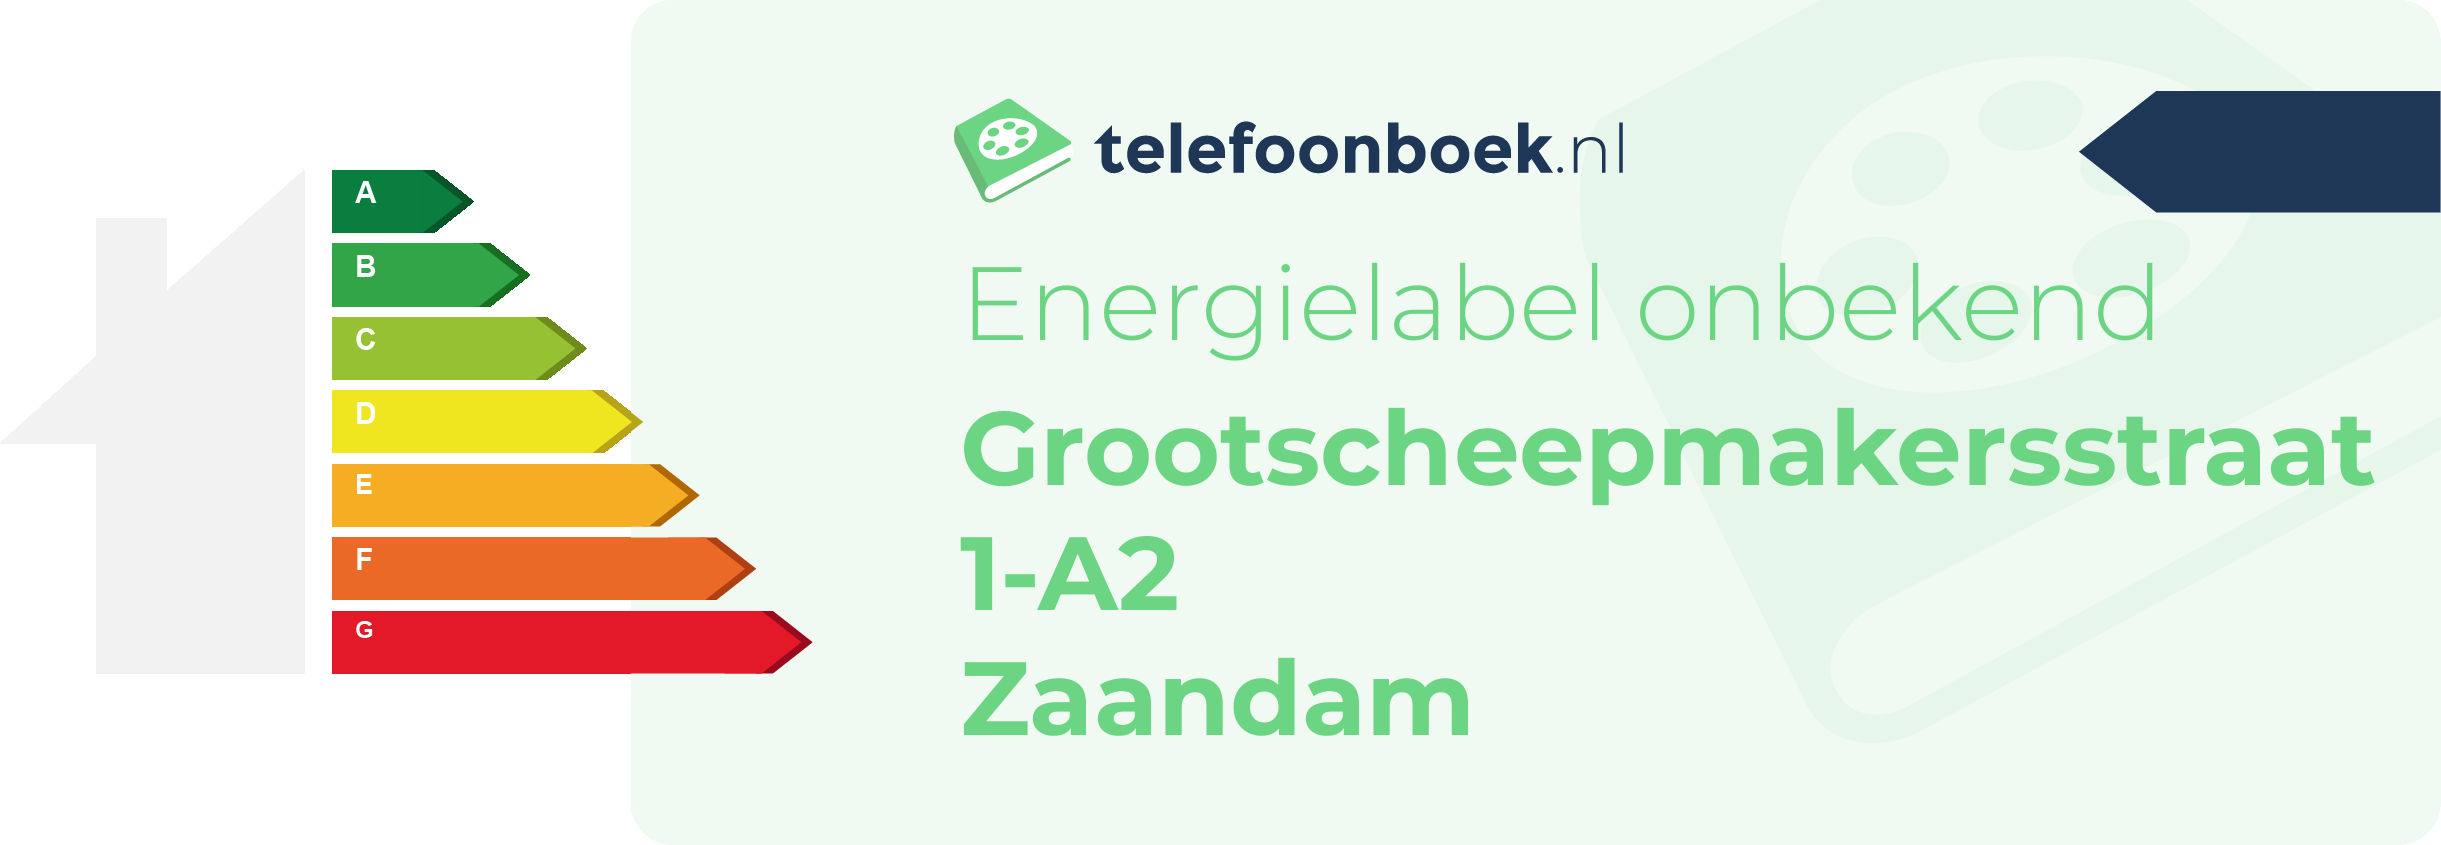 Energielabel Grootscheepmakersstraat 1-A2 Zaandam